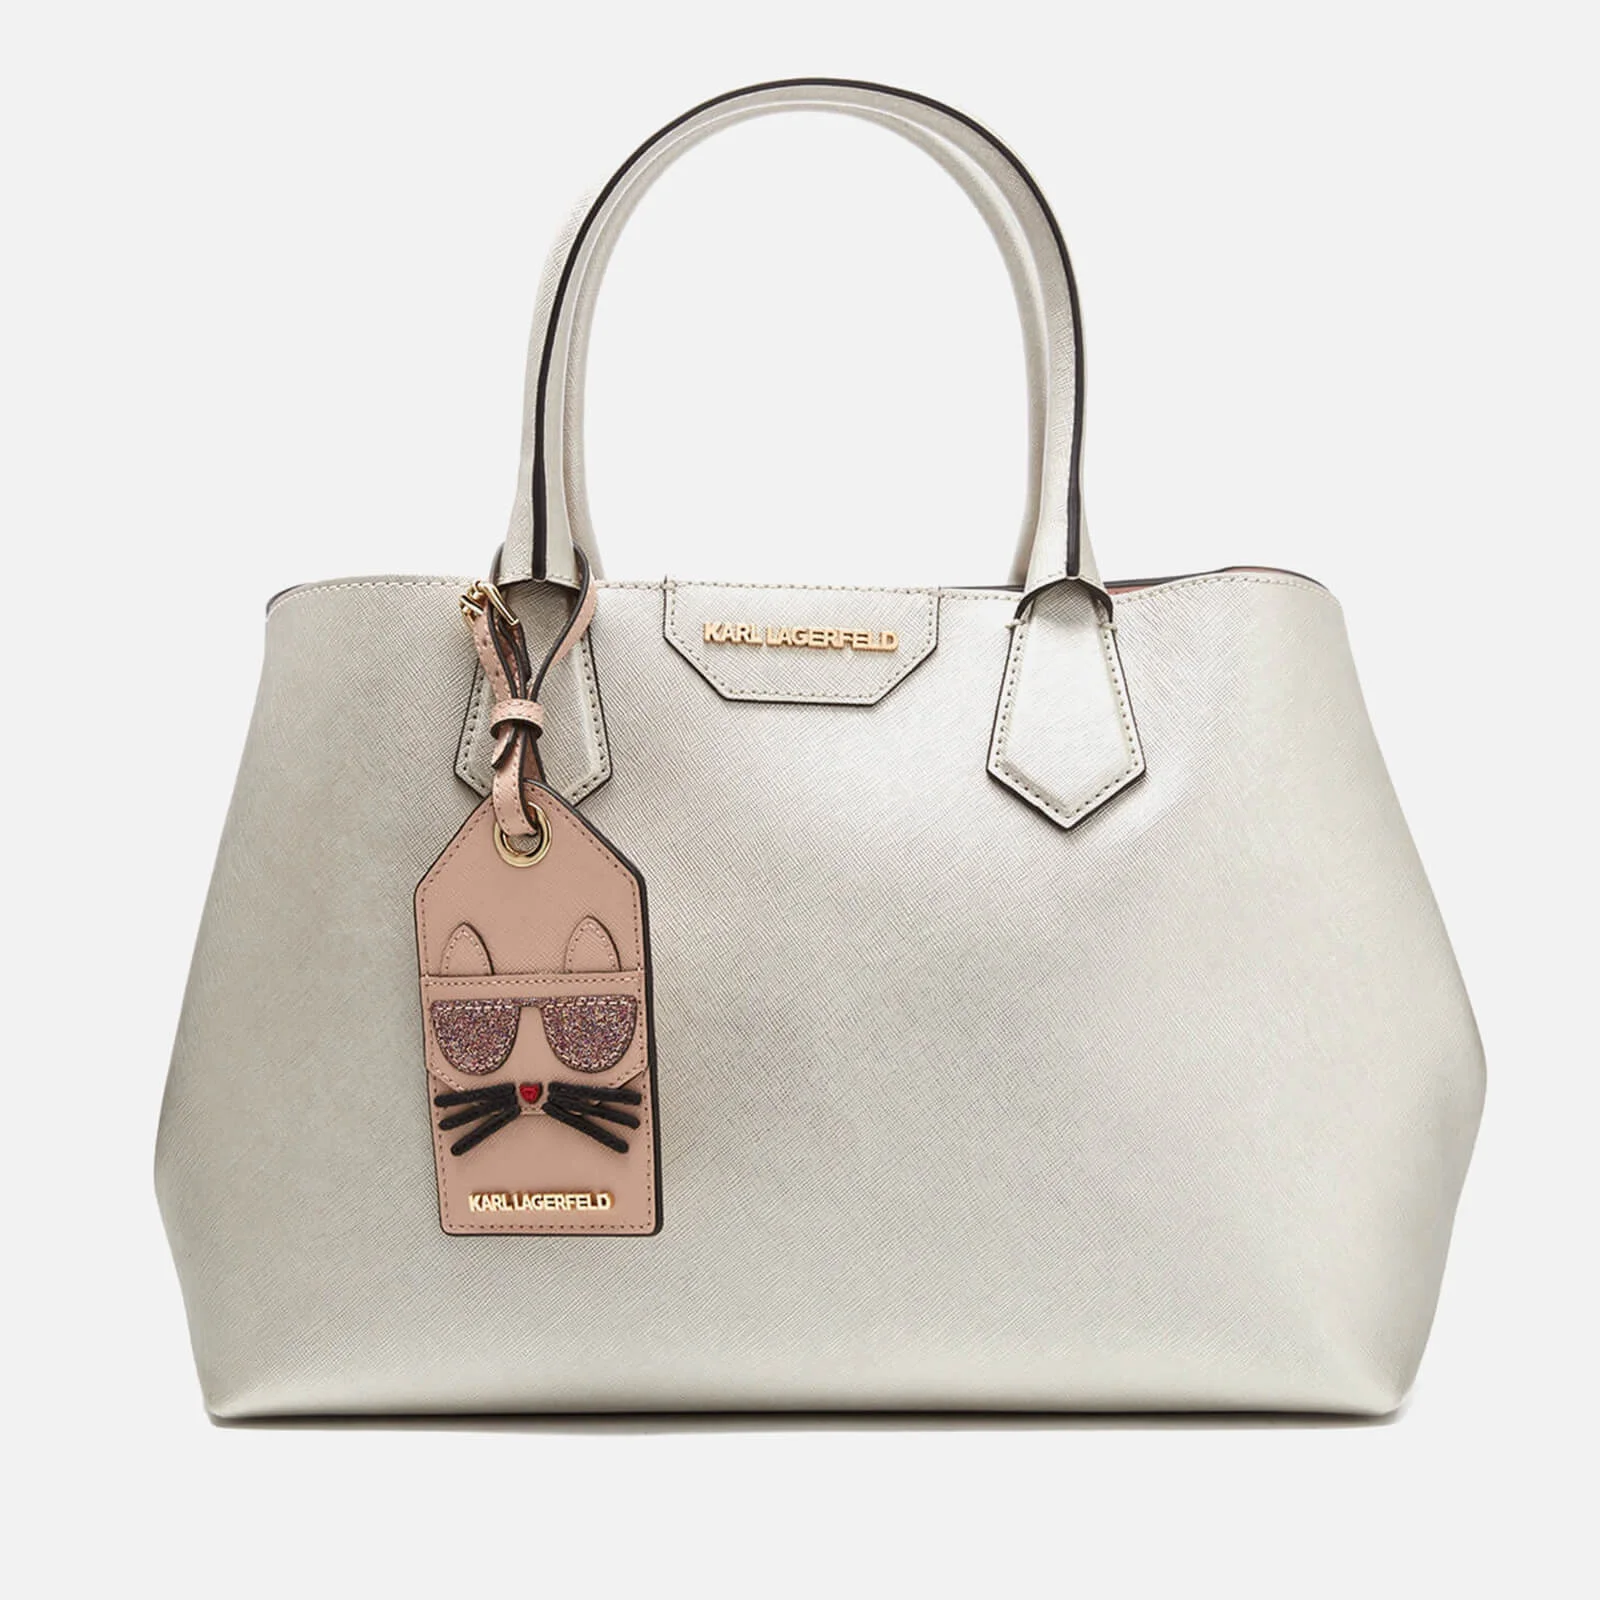 Karl Lagerfeld Women's K/Lady Shopper Bag - Champage Image 1